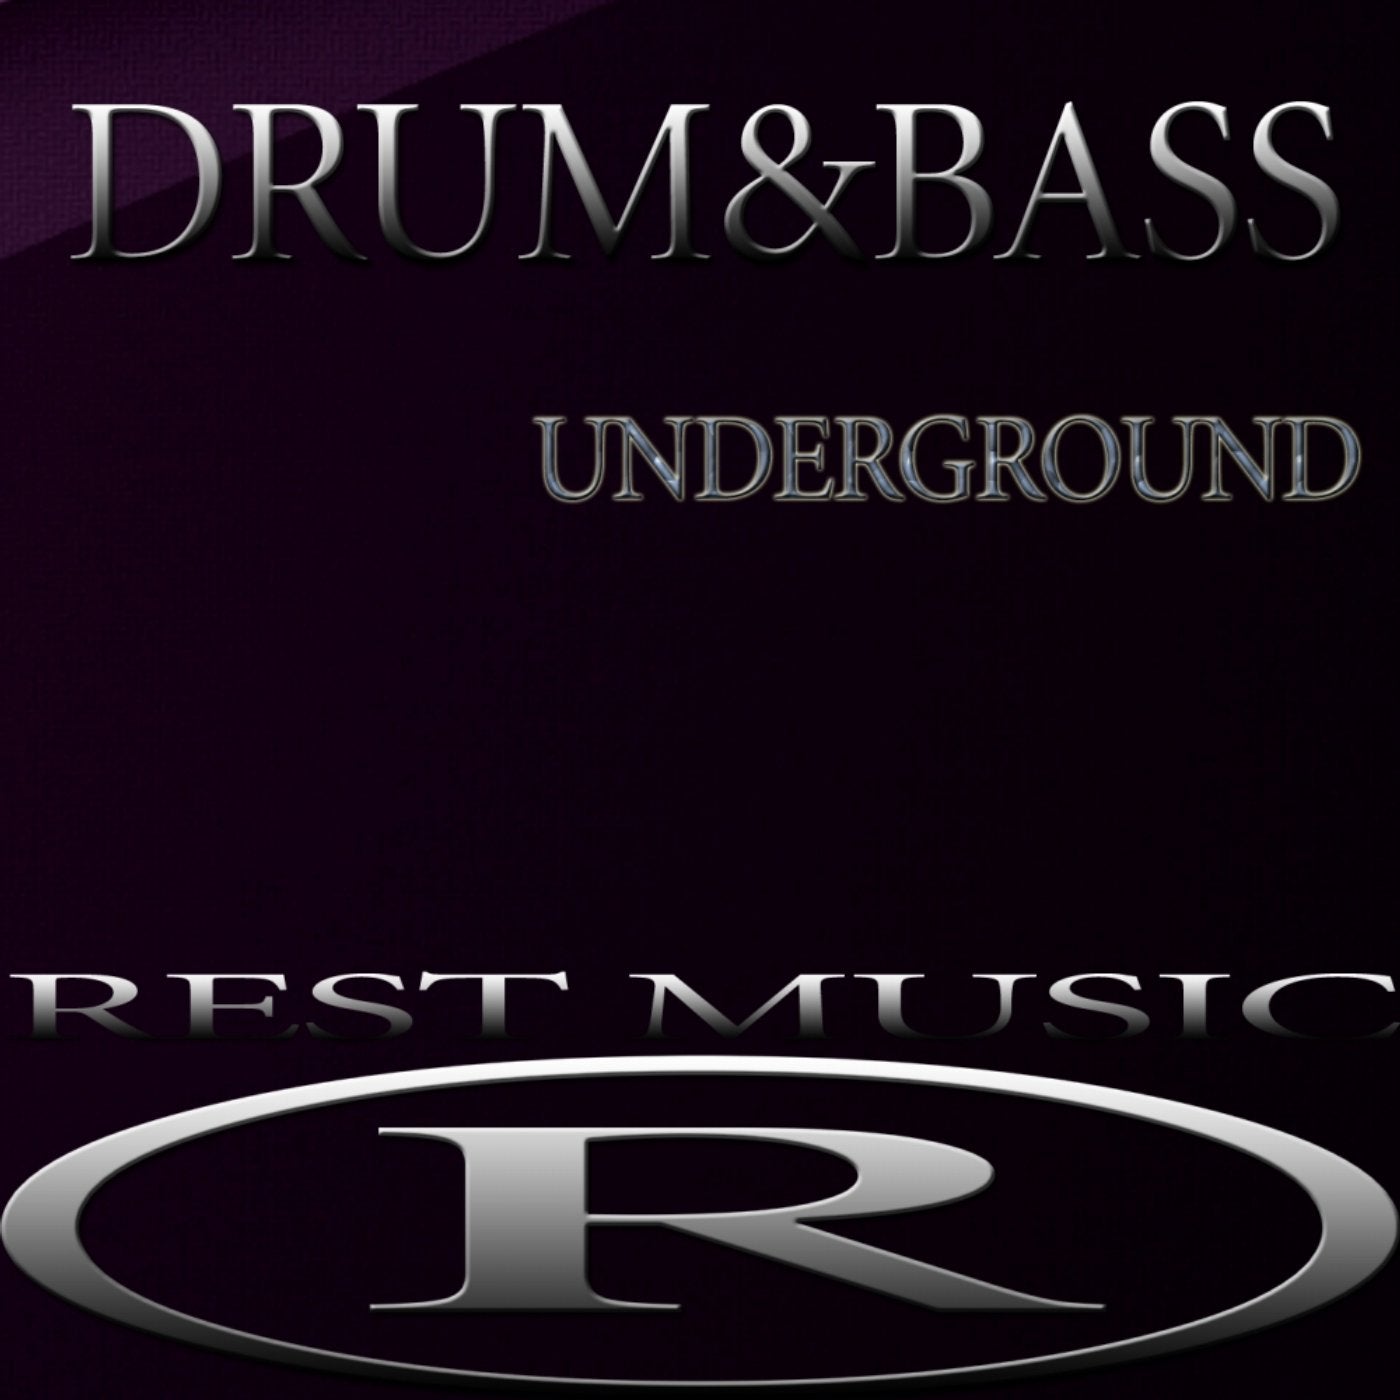 Drum & Bass Underground